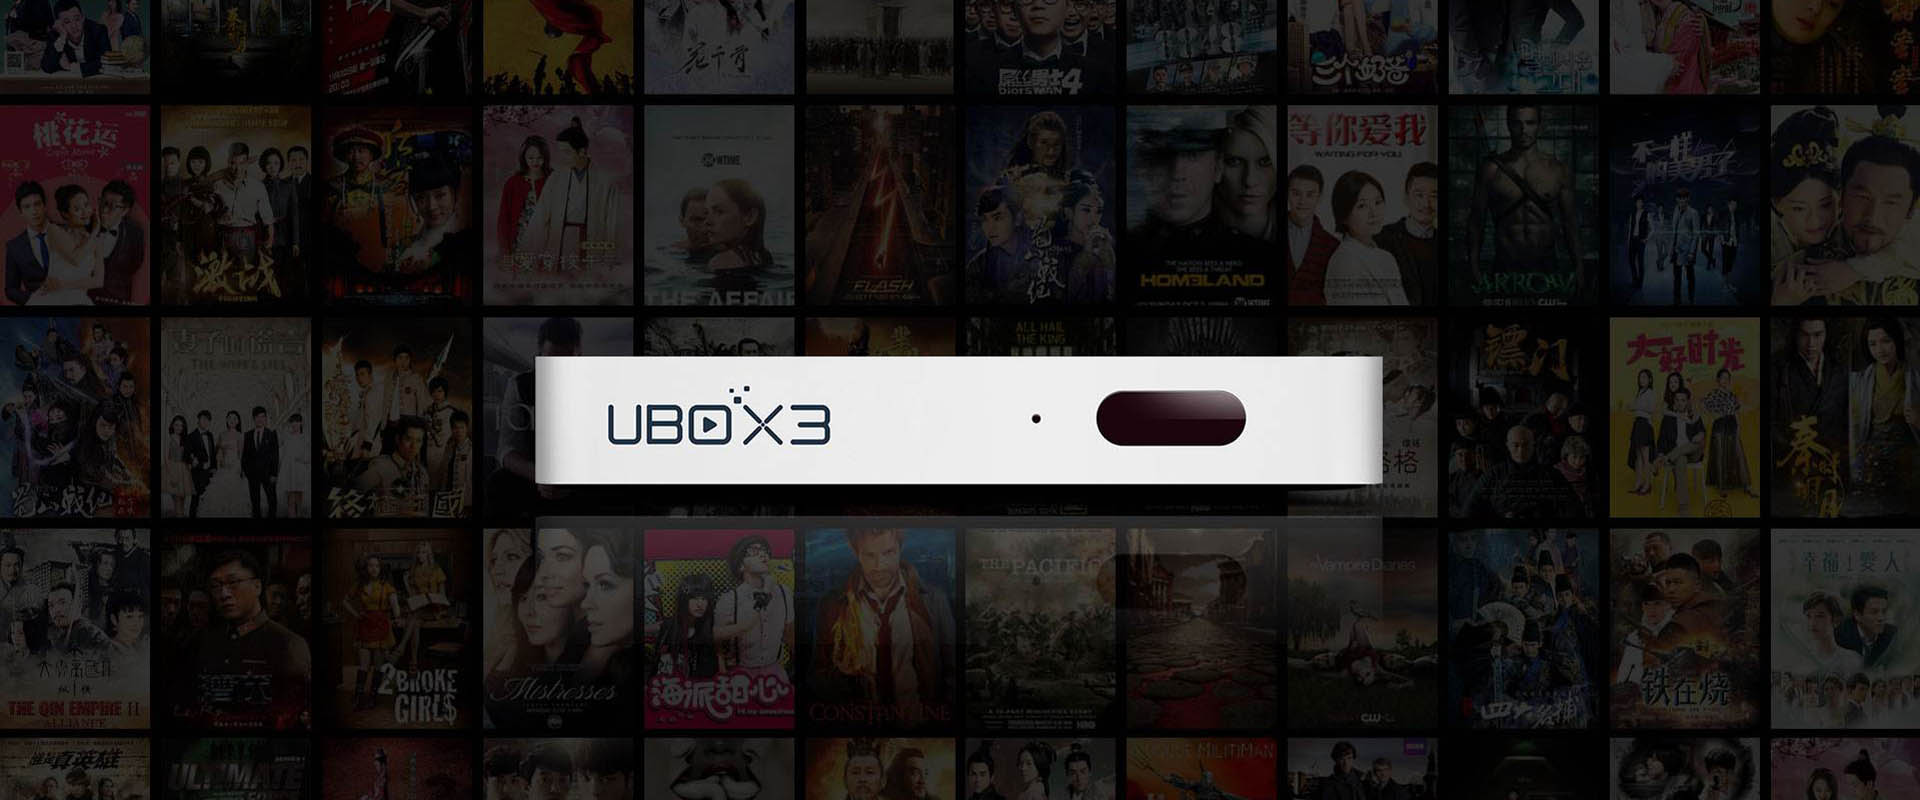 TV Box UBOX 3 - Regardez des émissions de télévision gratuites de la Chine continentale